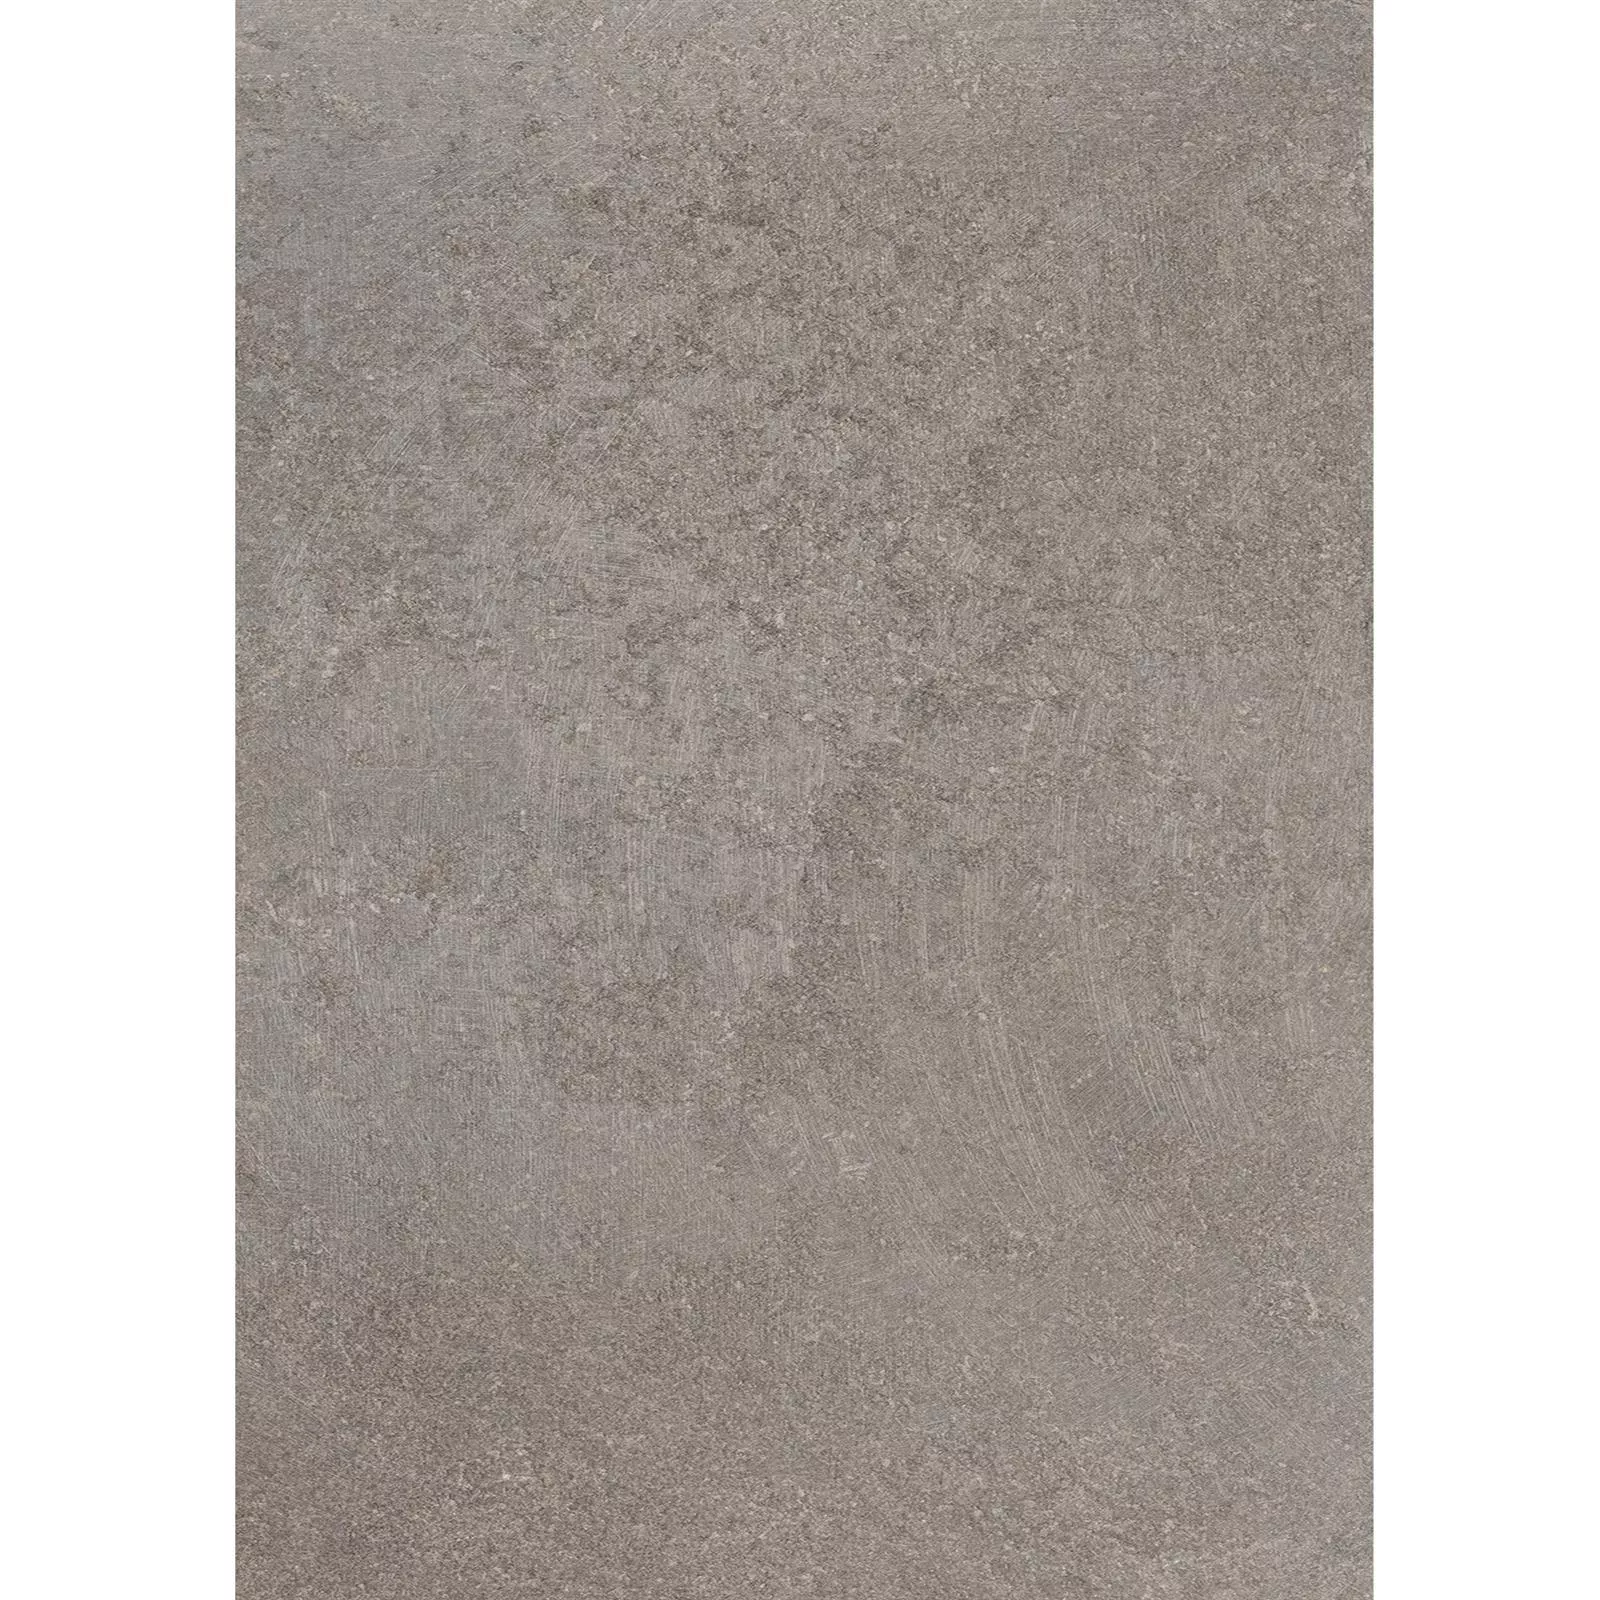 Πλακάκια Δαπέδου Πέτρινη Όψη Horizon Kαφέ 60x120cm